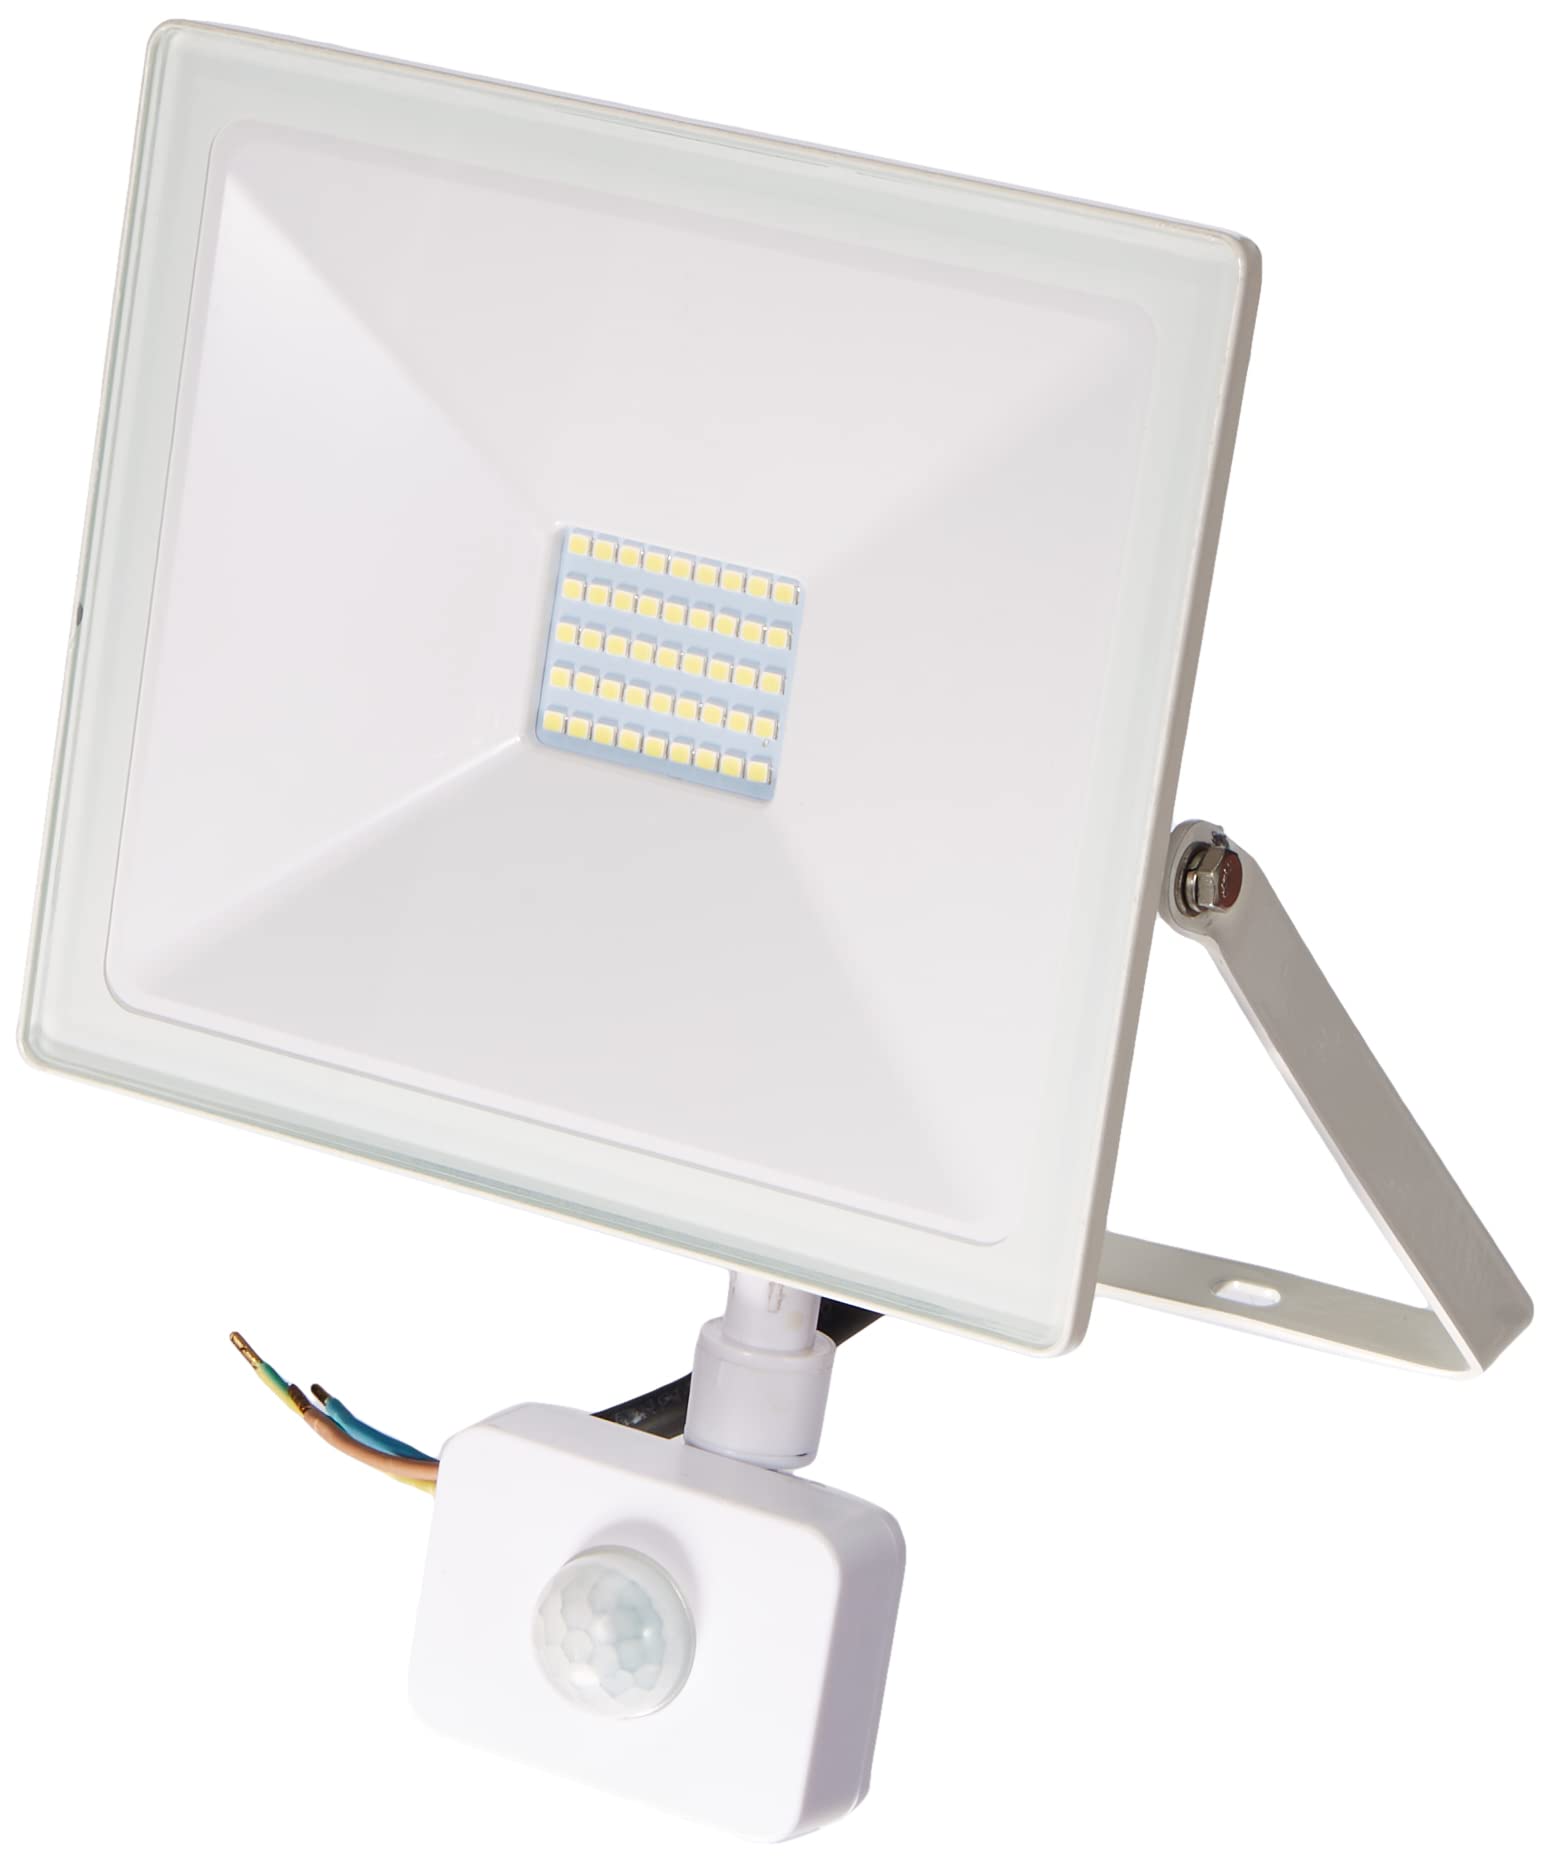 Fbright Led LED-Projektor, Weiß